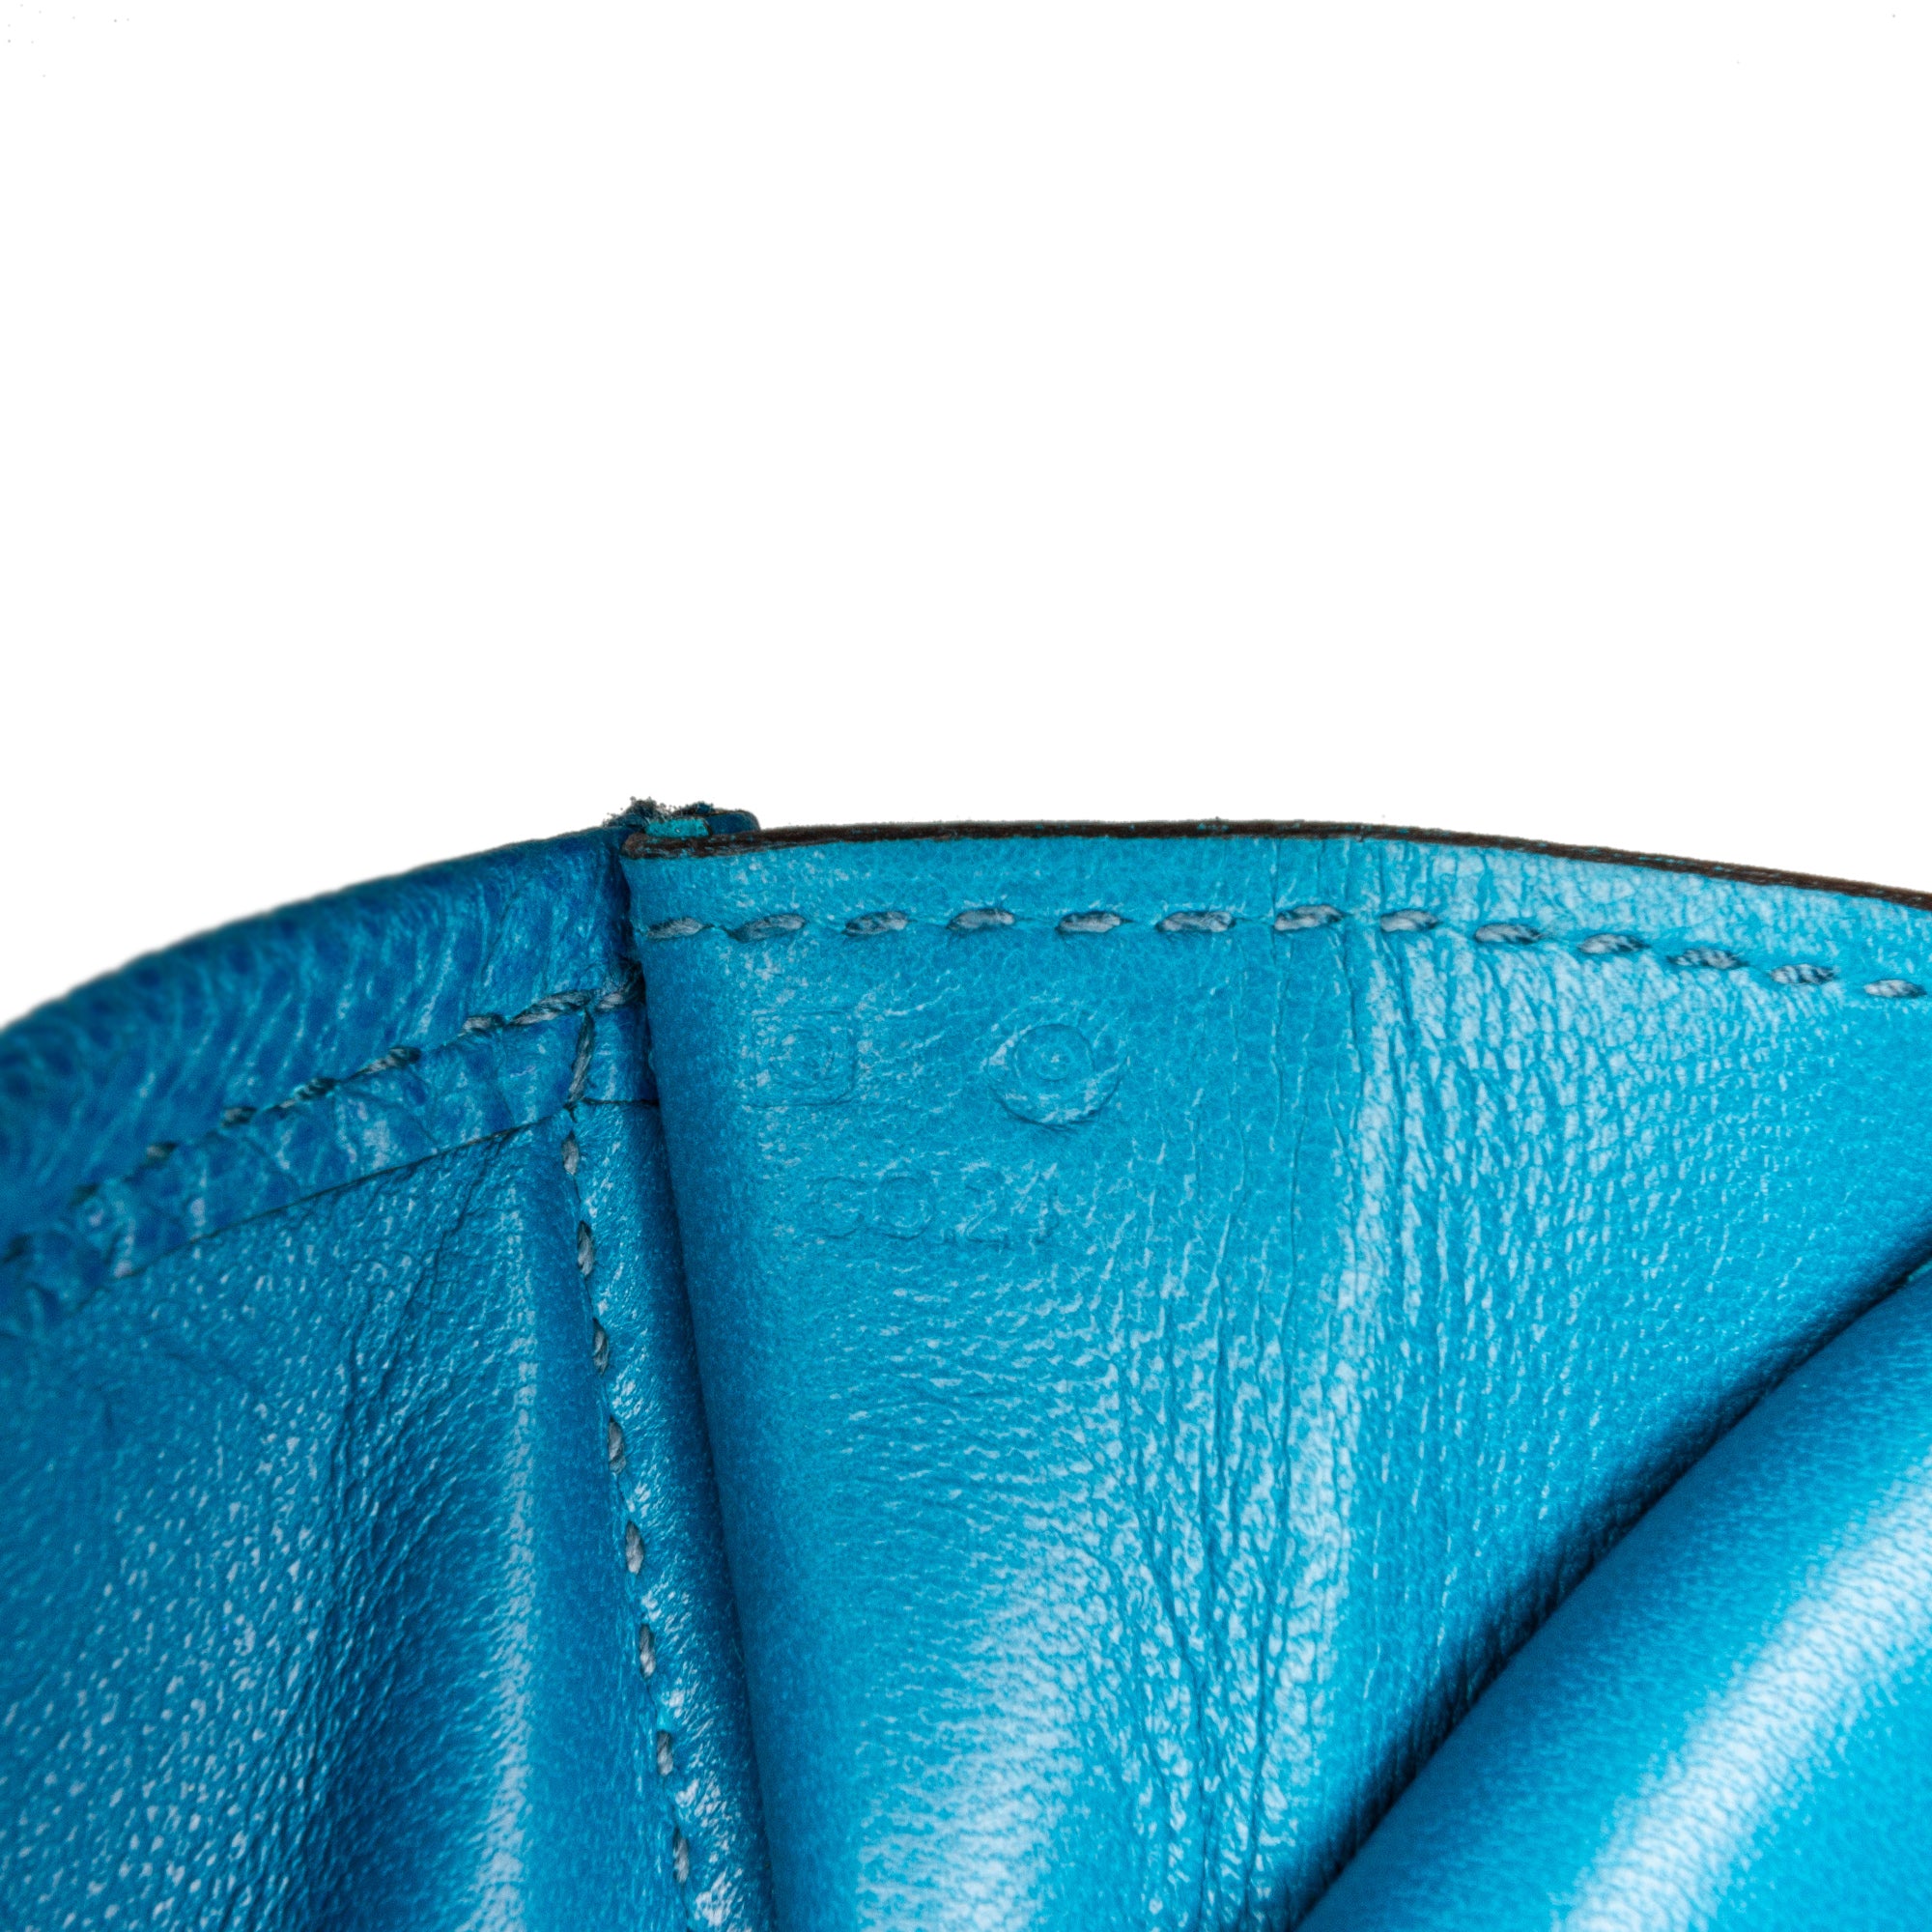 Hermès Jige Elan 29 Clutch Bag In Bleu Zanzibar Chèvre Chandra